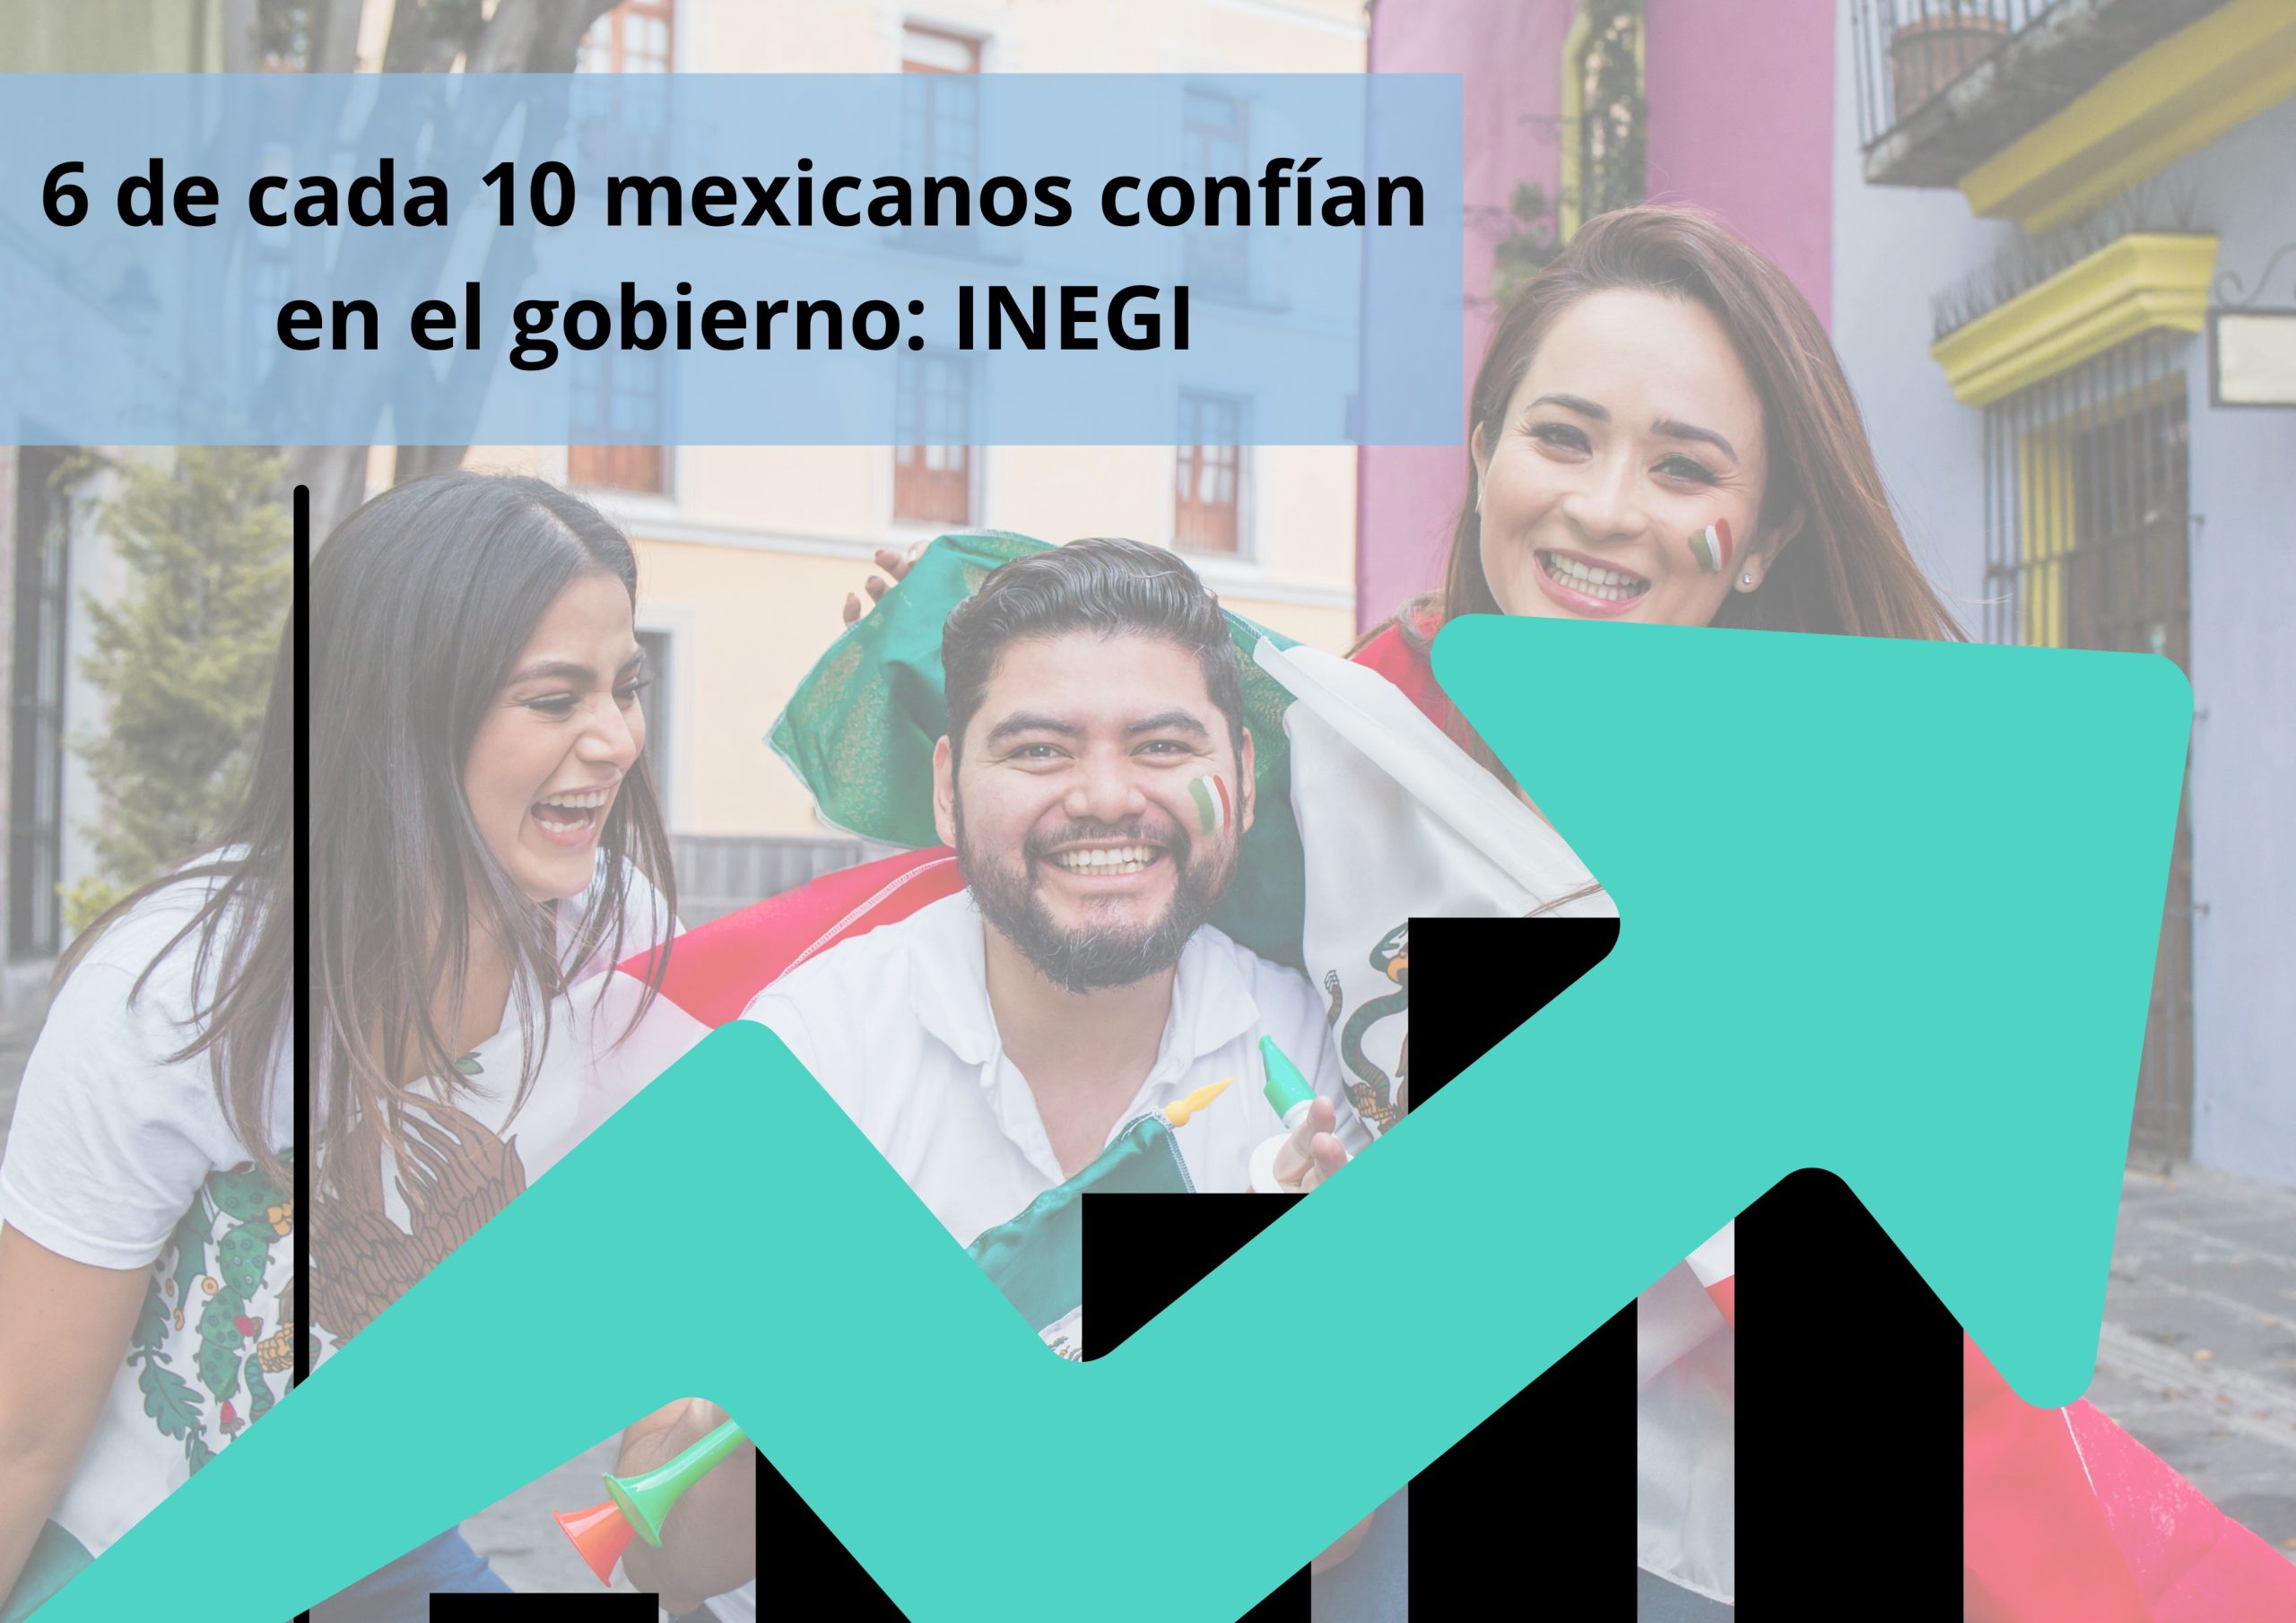 6 de cada 10 mexicanos confían en el gobierno INEGI